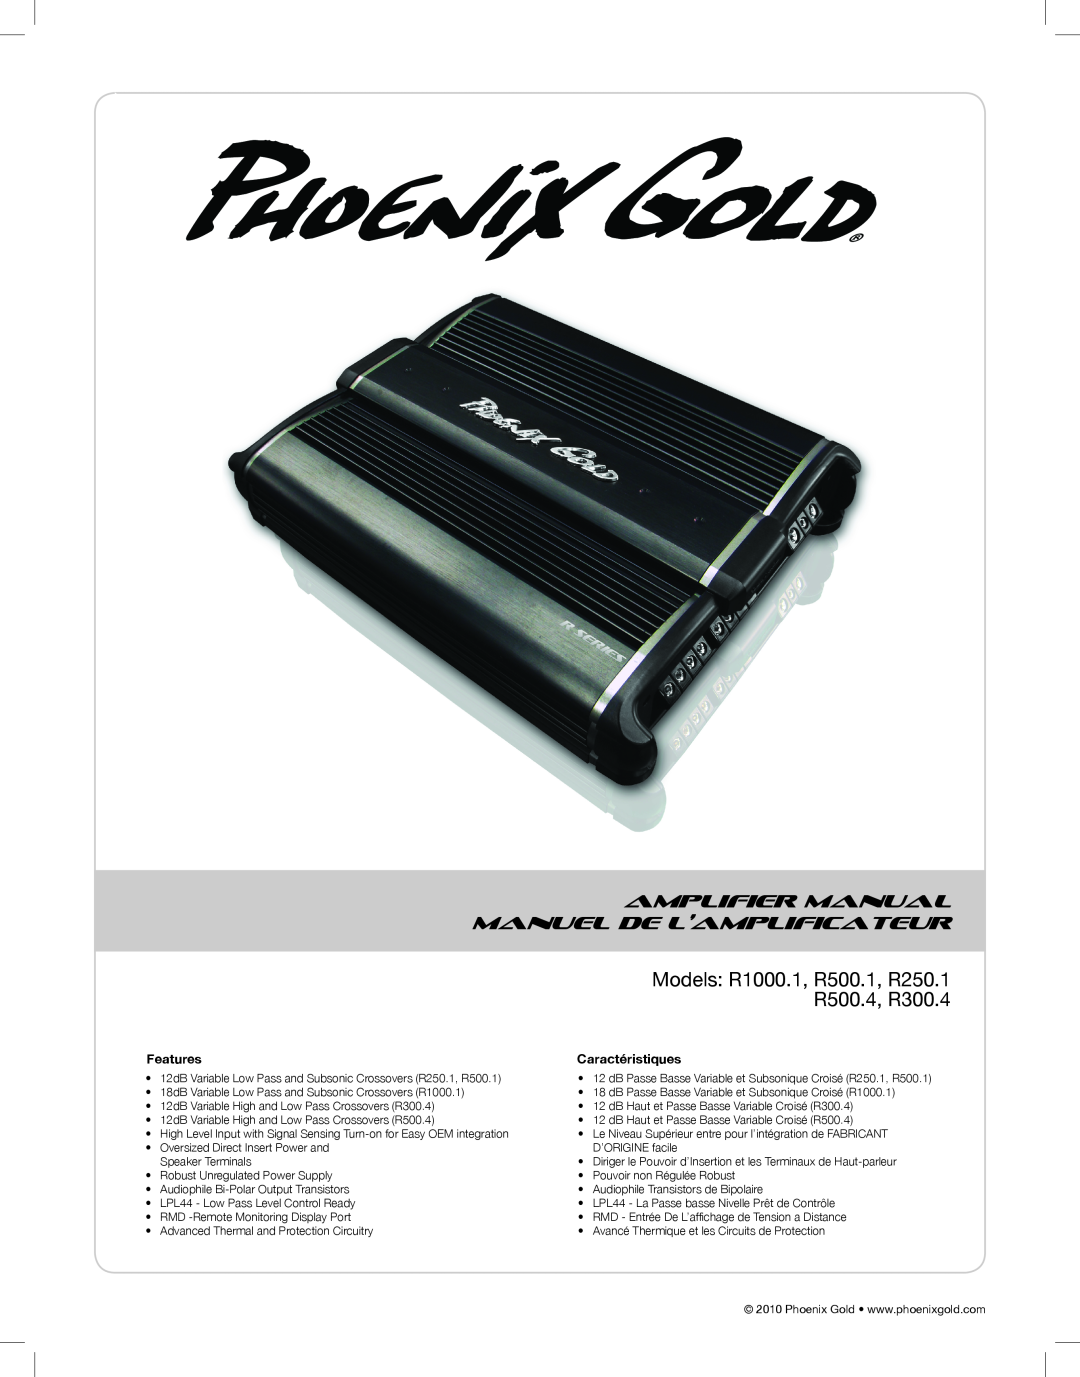 Phoenix Gold manual Amplifier Manual Manuel De L’Amplificateur, Models R1000.1, R500.1, R250.1 R500.4, R300.4 